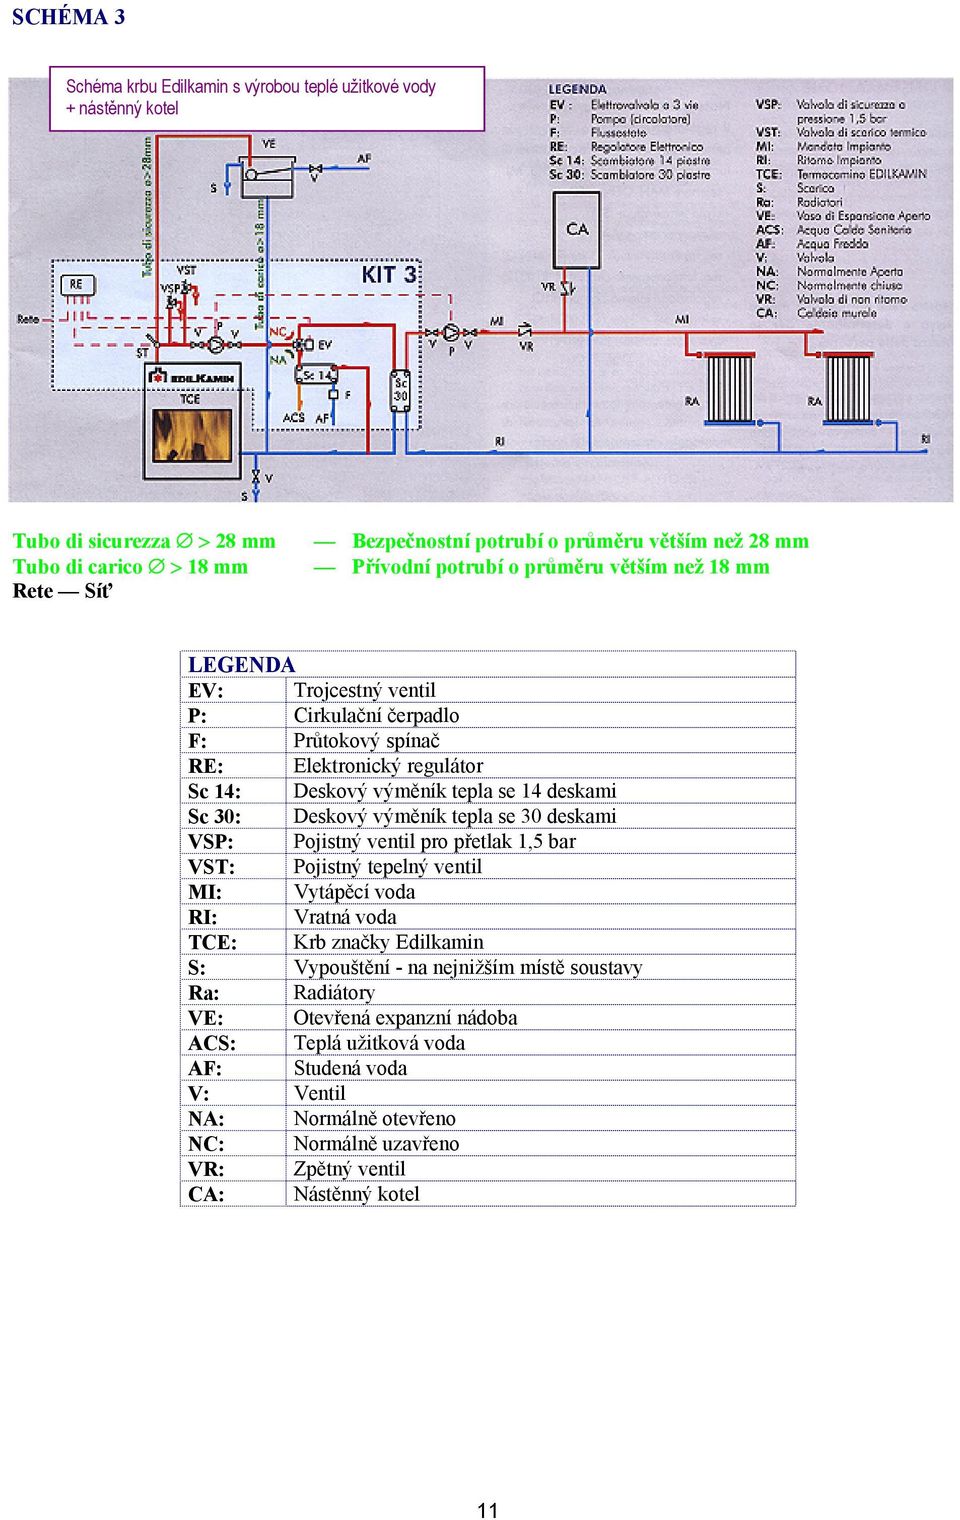 30: Deskový výměník tepla se 30 deskami VSP: Pojistný ventil pro přetlak 1,5 bar VST: Pojistný tepelný ventil MI: Vytápěcí voda RI: Vratná voda TCE: Krb značky Edilkamin S: Vypouštění - na